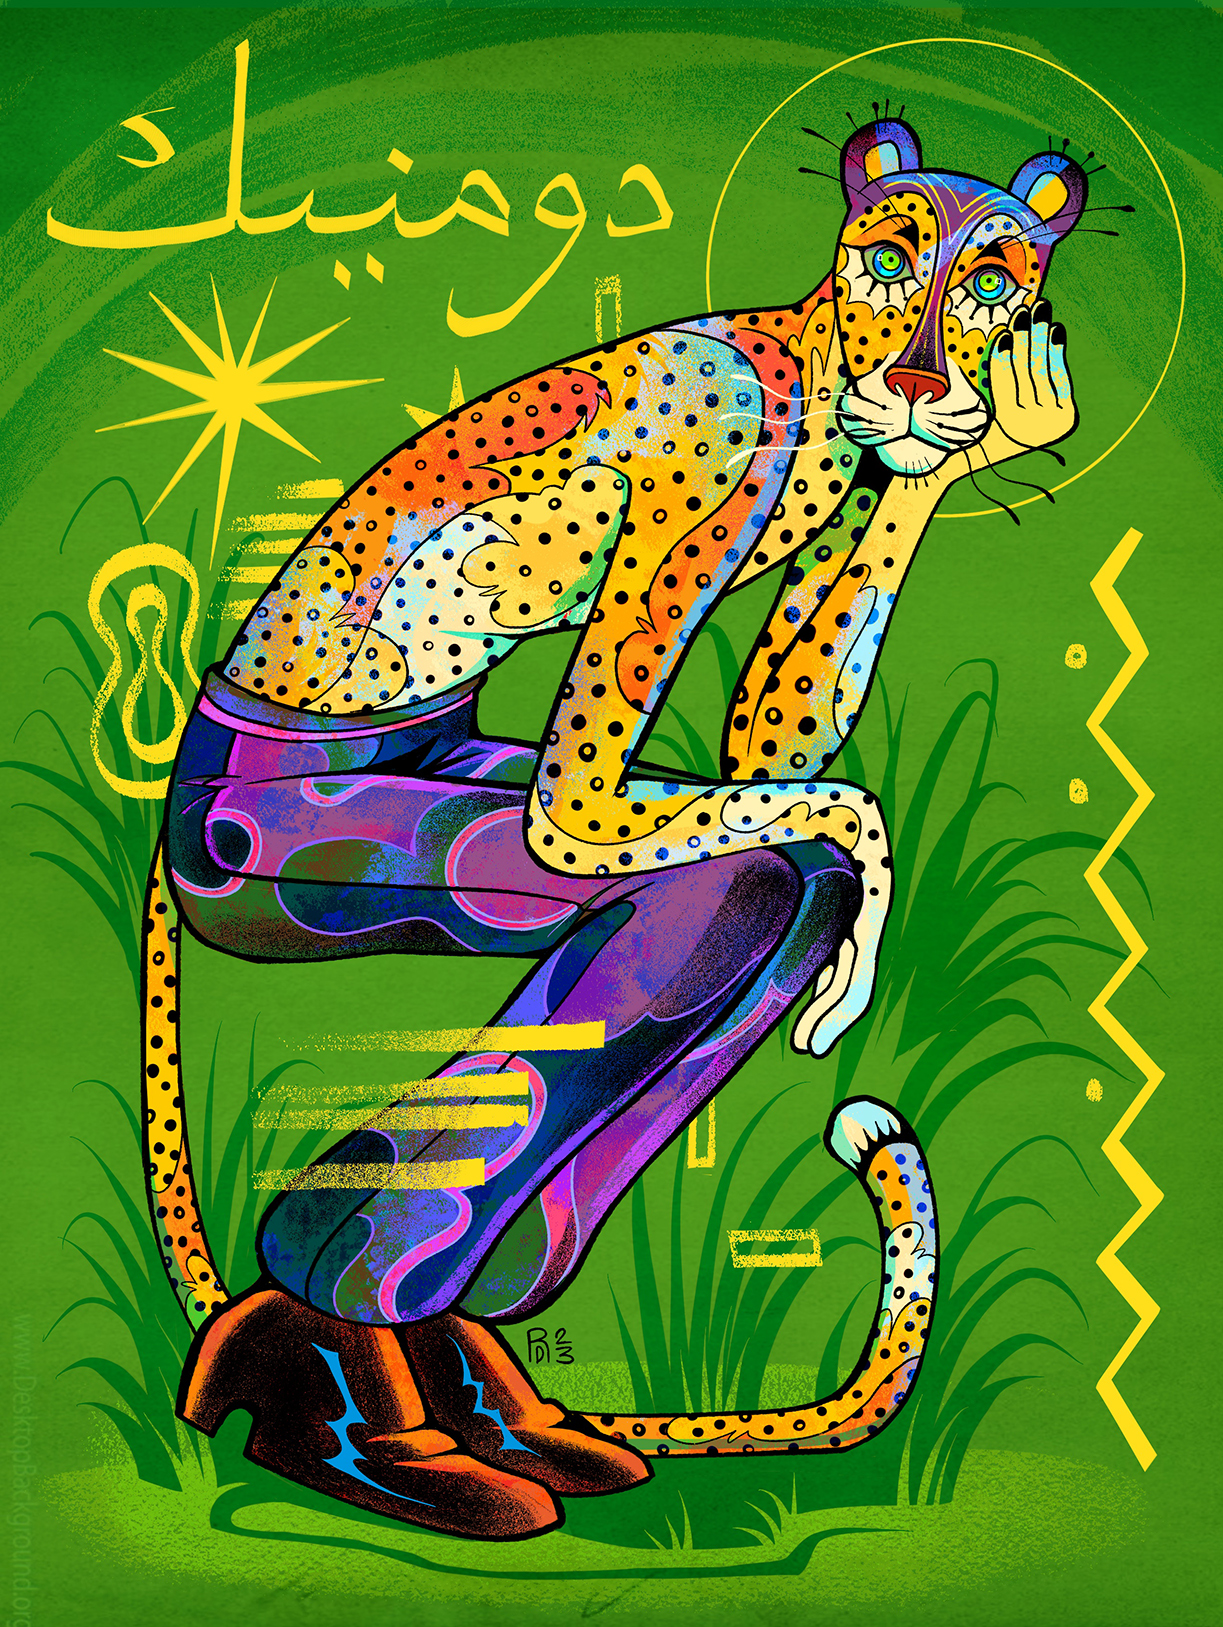 Purple pants – cheetah illustration